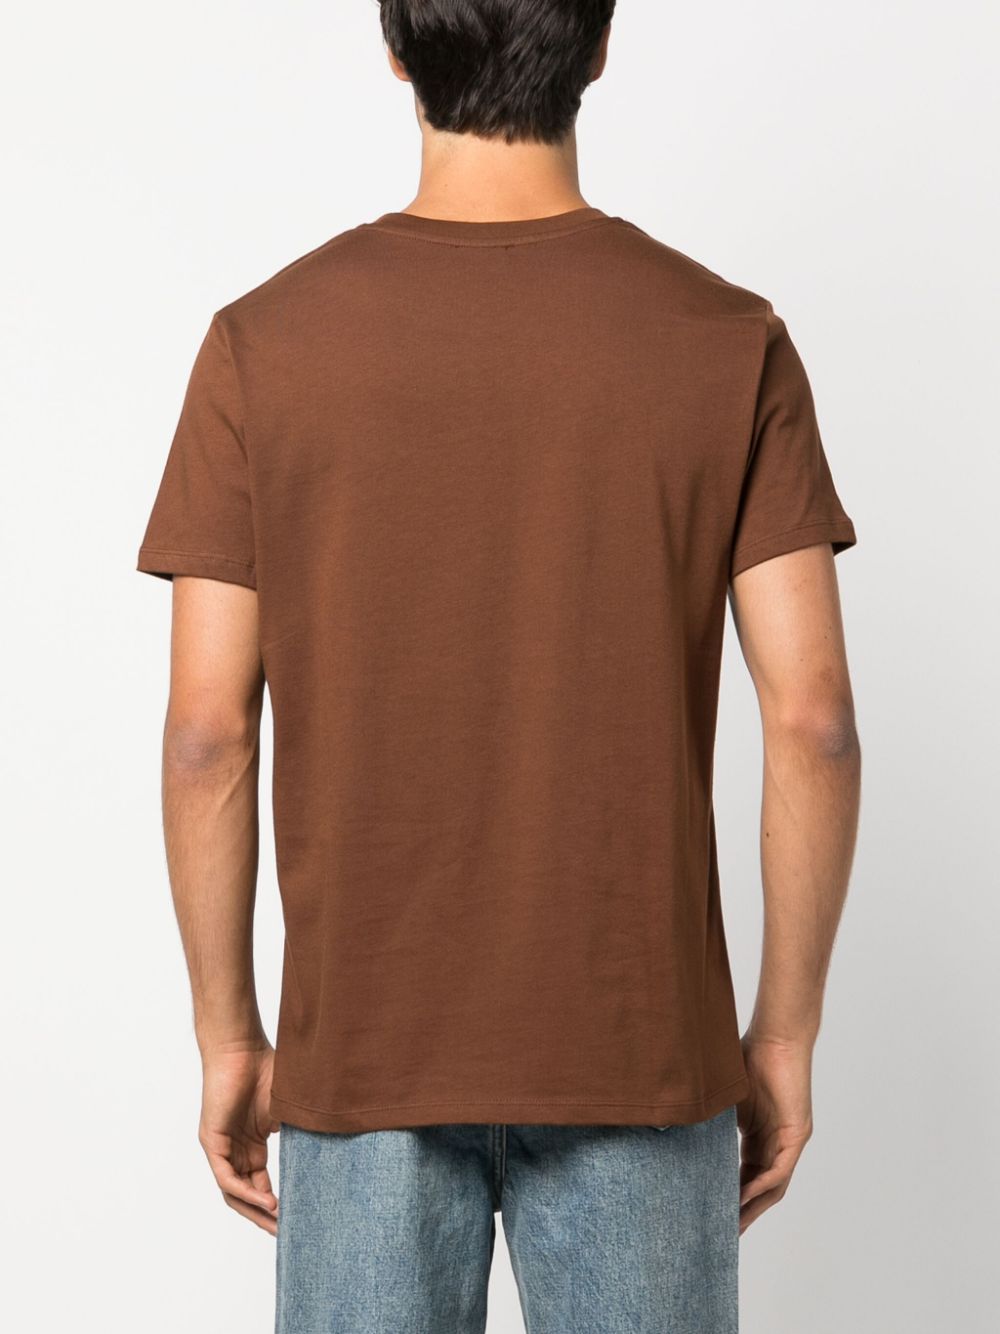 t-shirt marrone con stampa